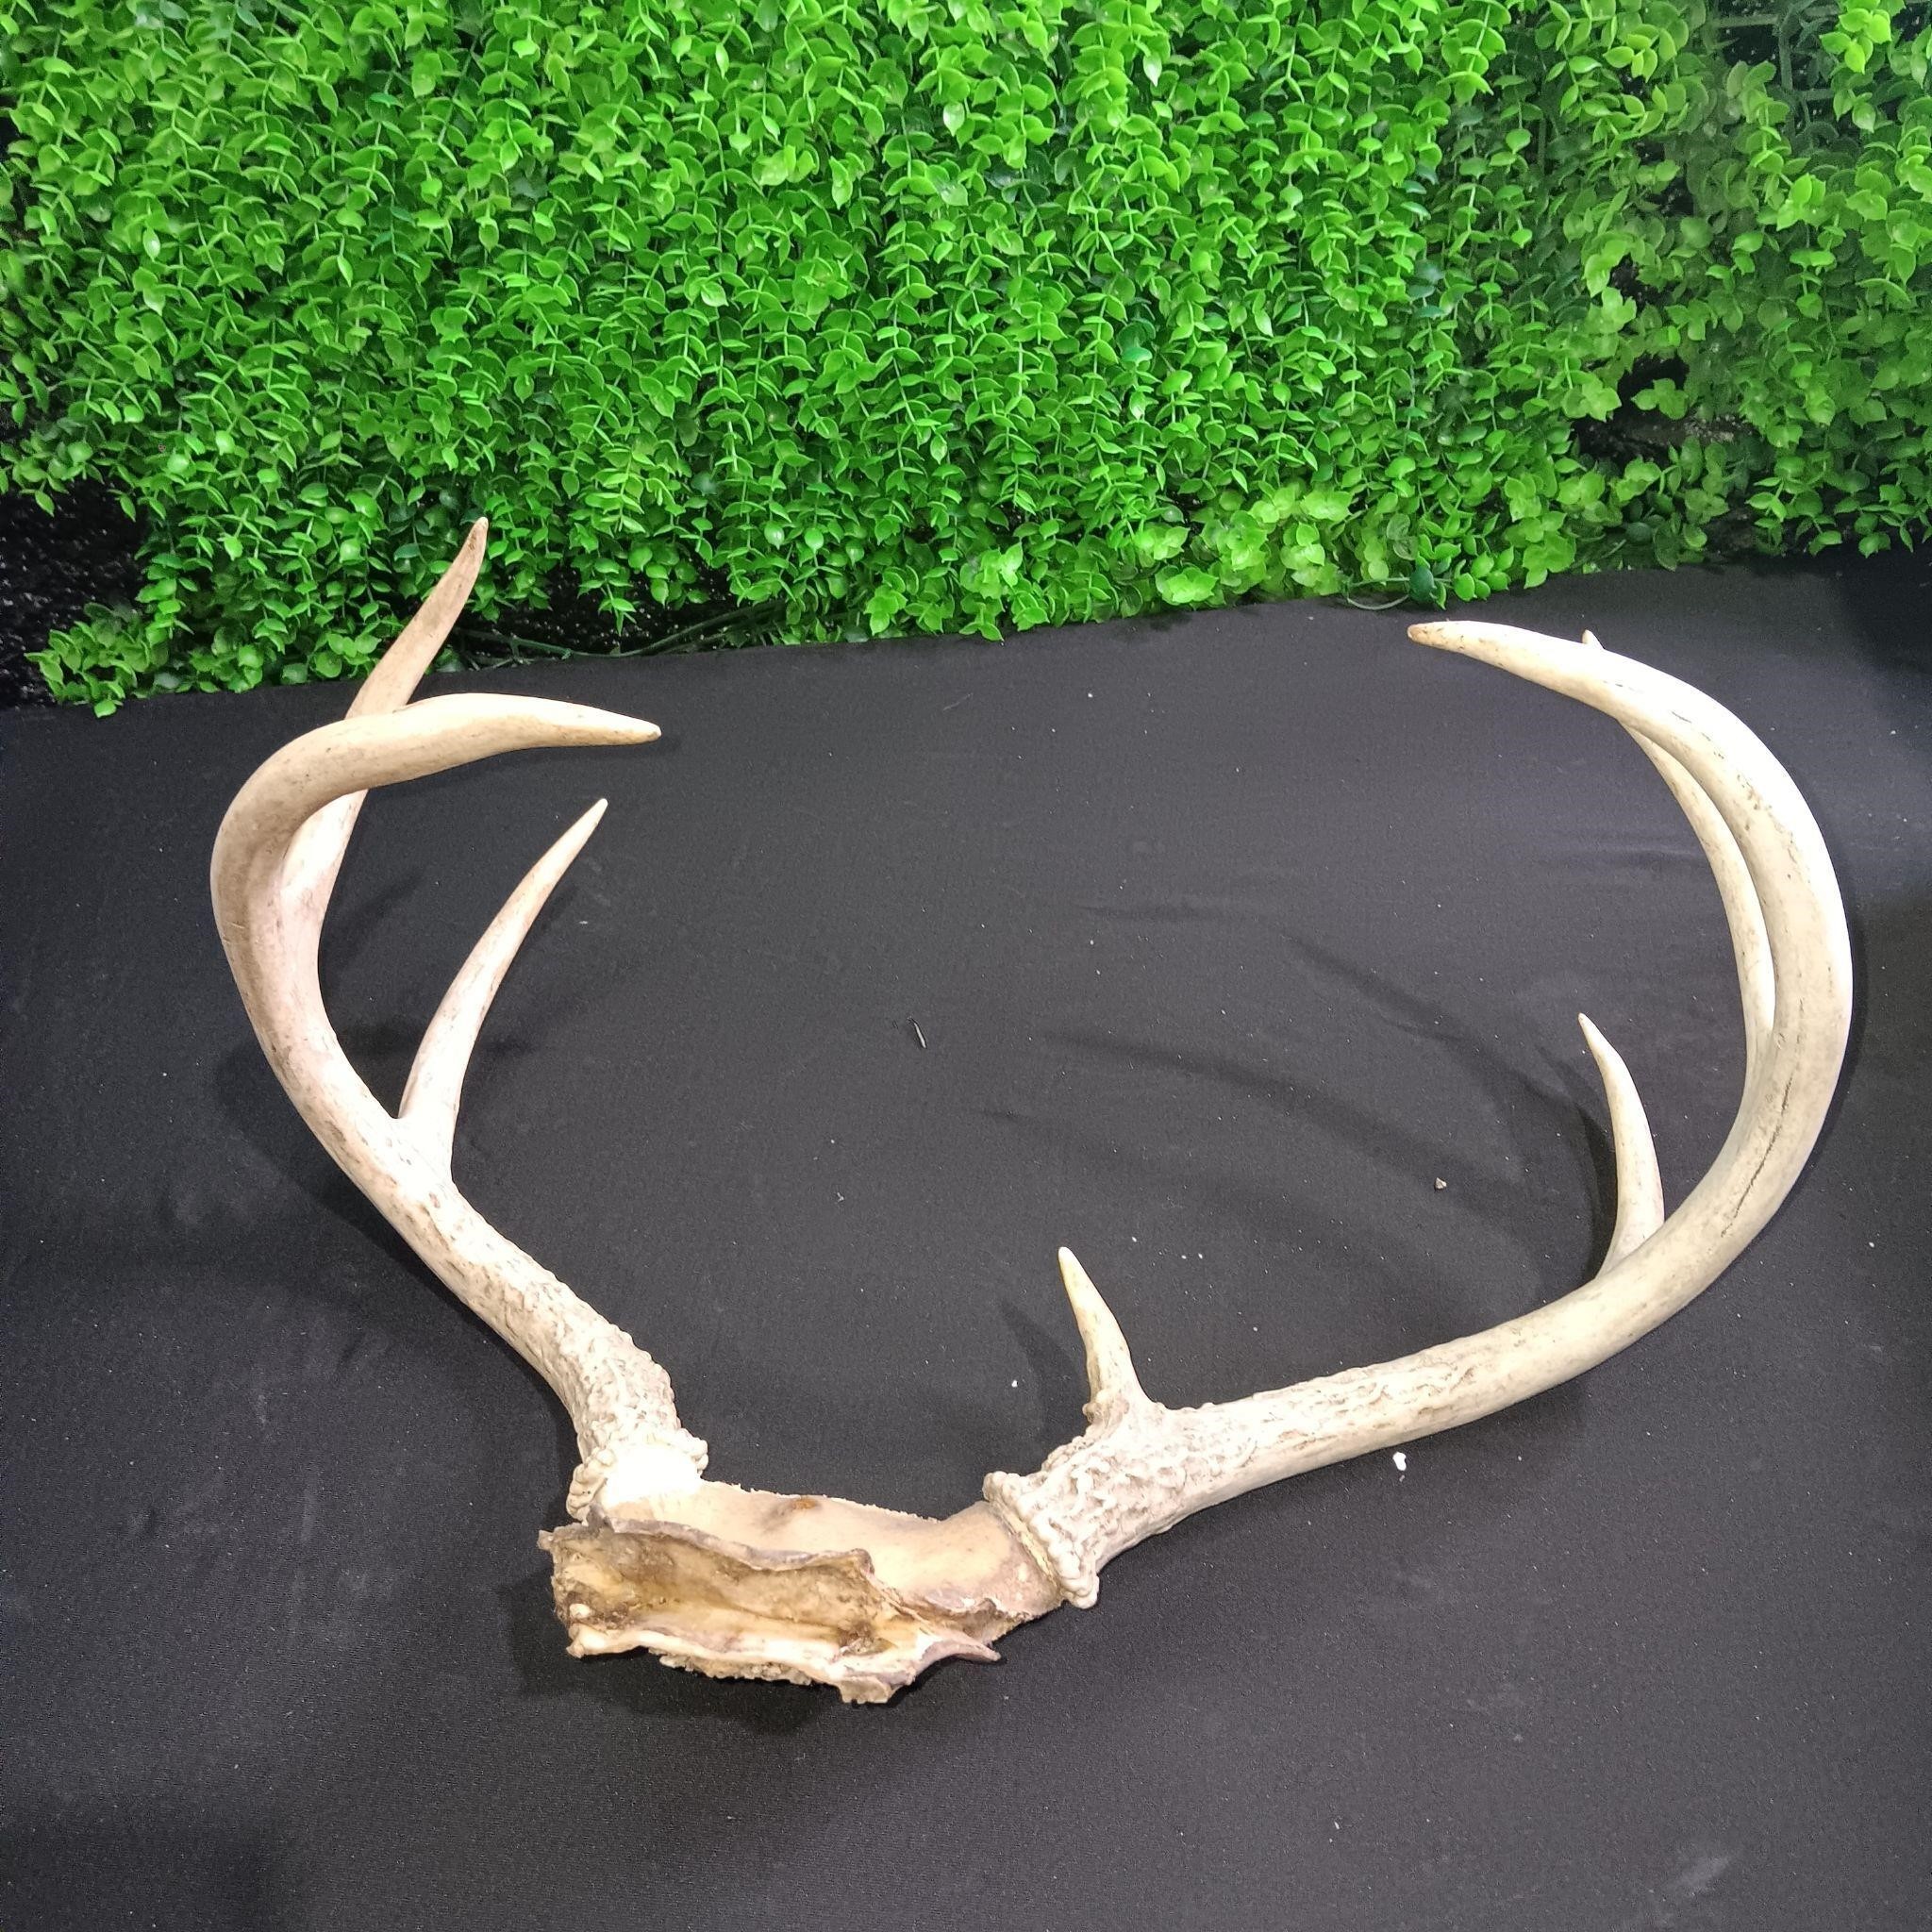 Deer Antlers Size 12 x 8